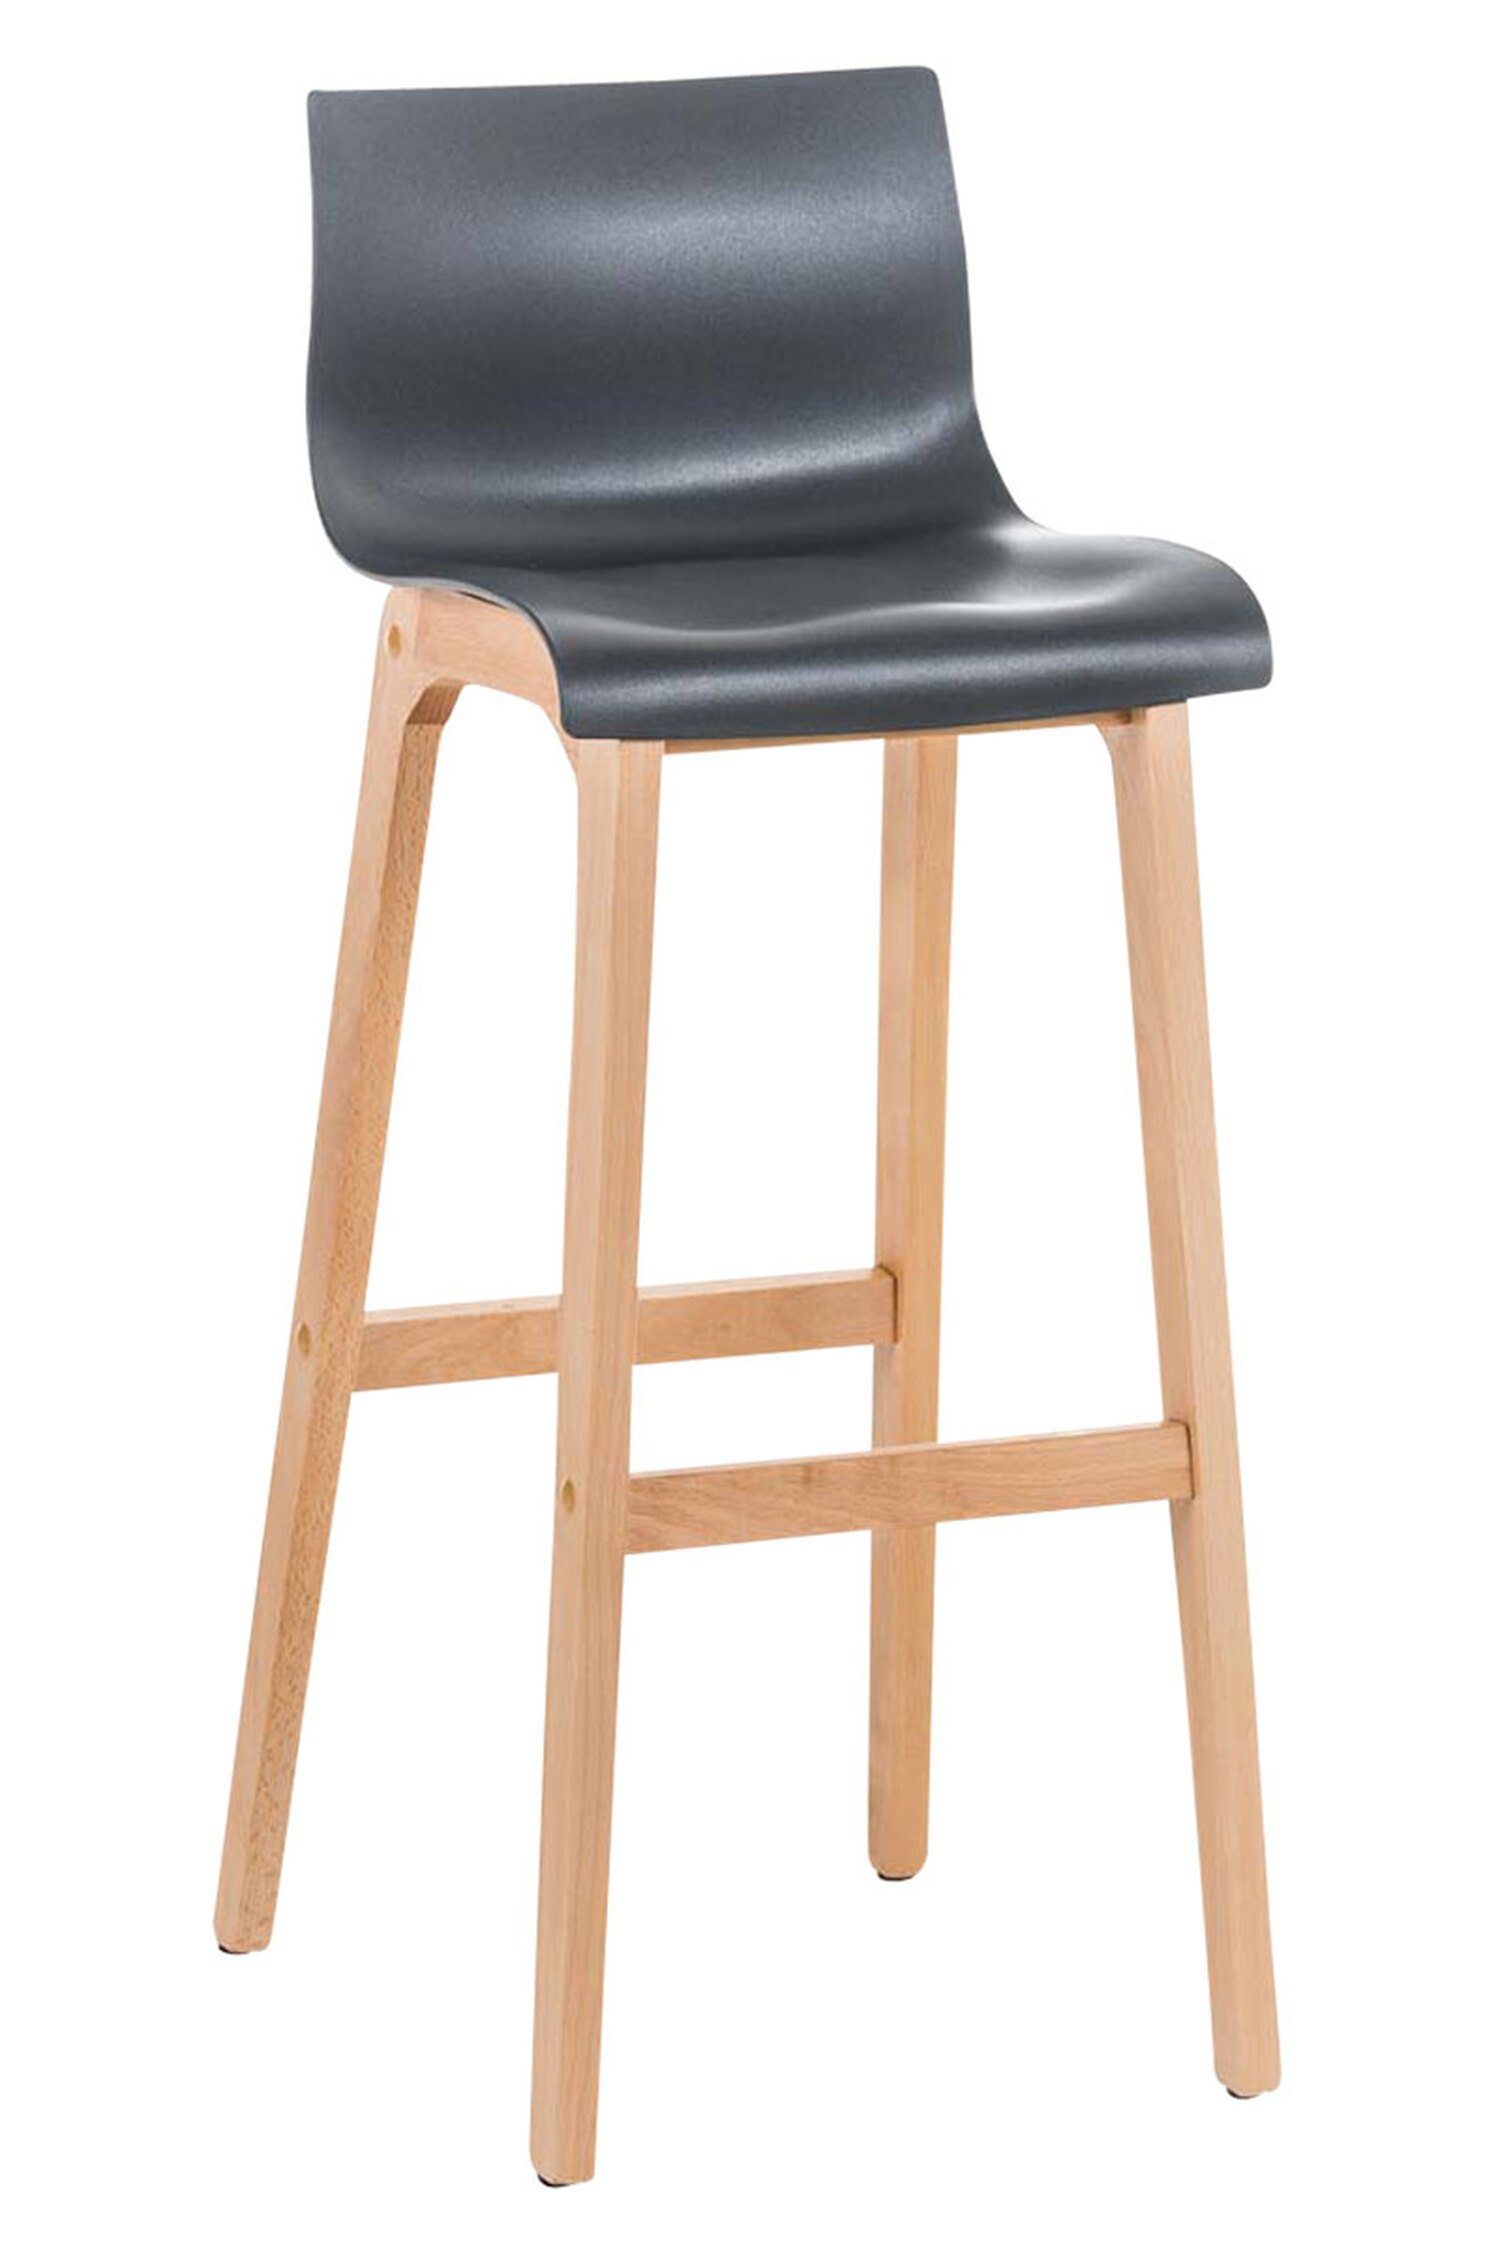 TPFLiving Barhocker Hoover (mit Fußstütze - Hocker für Theke & Küche - Tresenhocker), Gestell Metall hellbraun - Sitzfläche: Kunststoff Grau